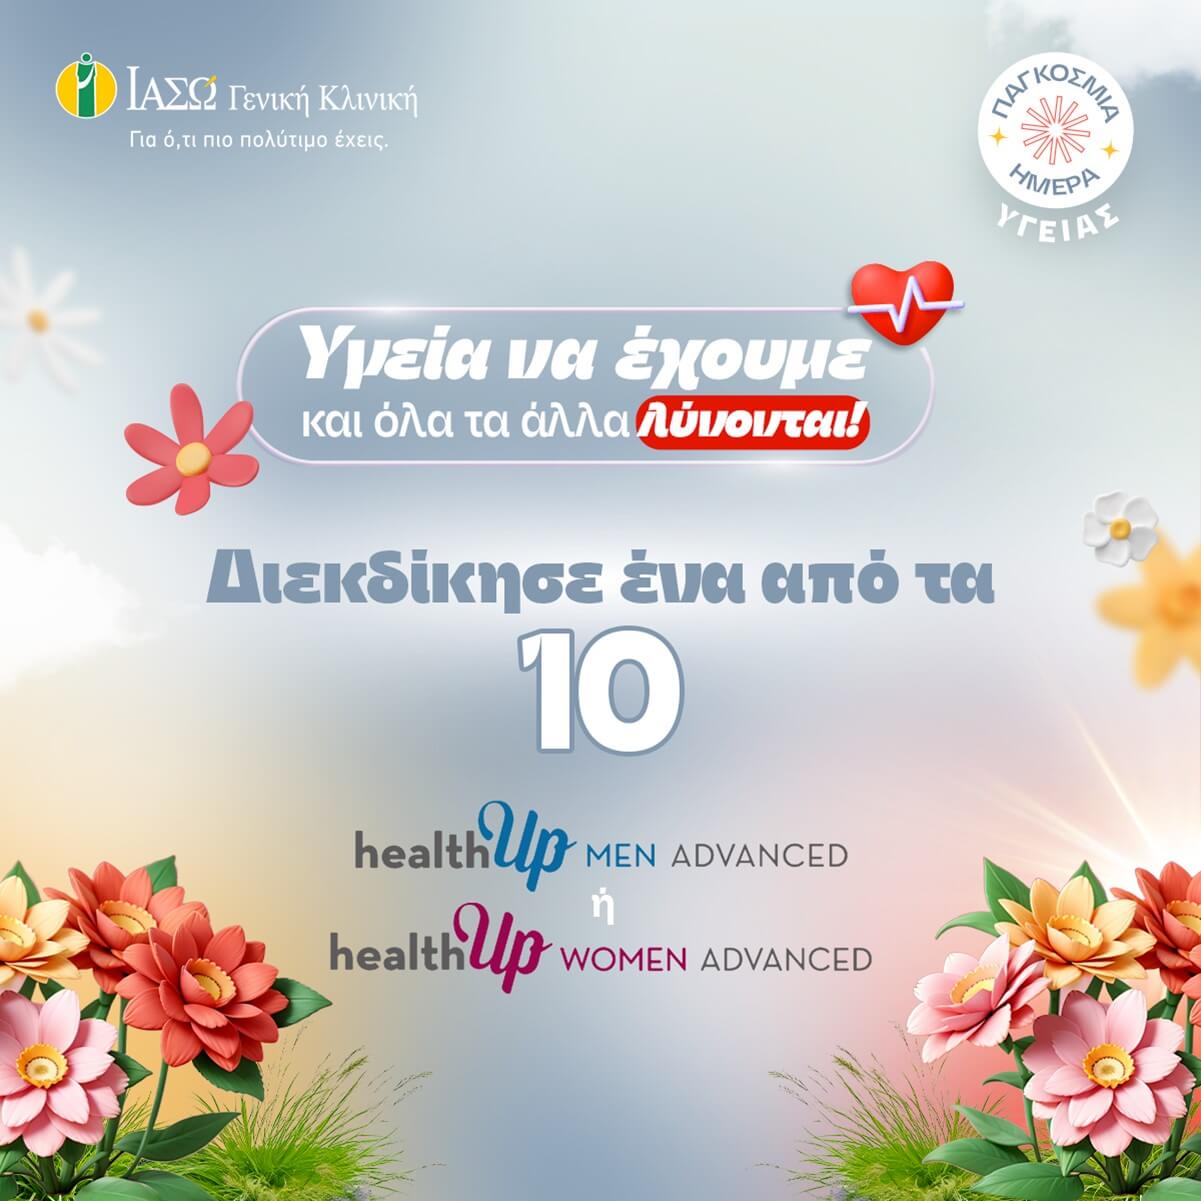 ΙΑΣΩ Γενική Κλινική: «Υγεία να έχουμε και όλα τα άλλα λύνονται»
Διαγωνισμός με 10 check up δώρο για την Παγκόσμια Ημέρα Υγείας στο Instagram